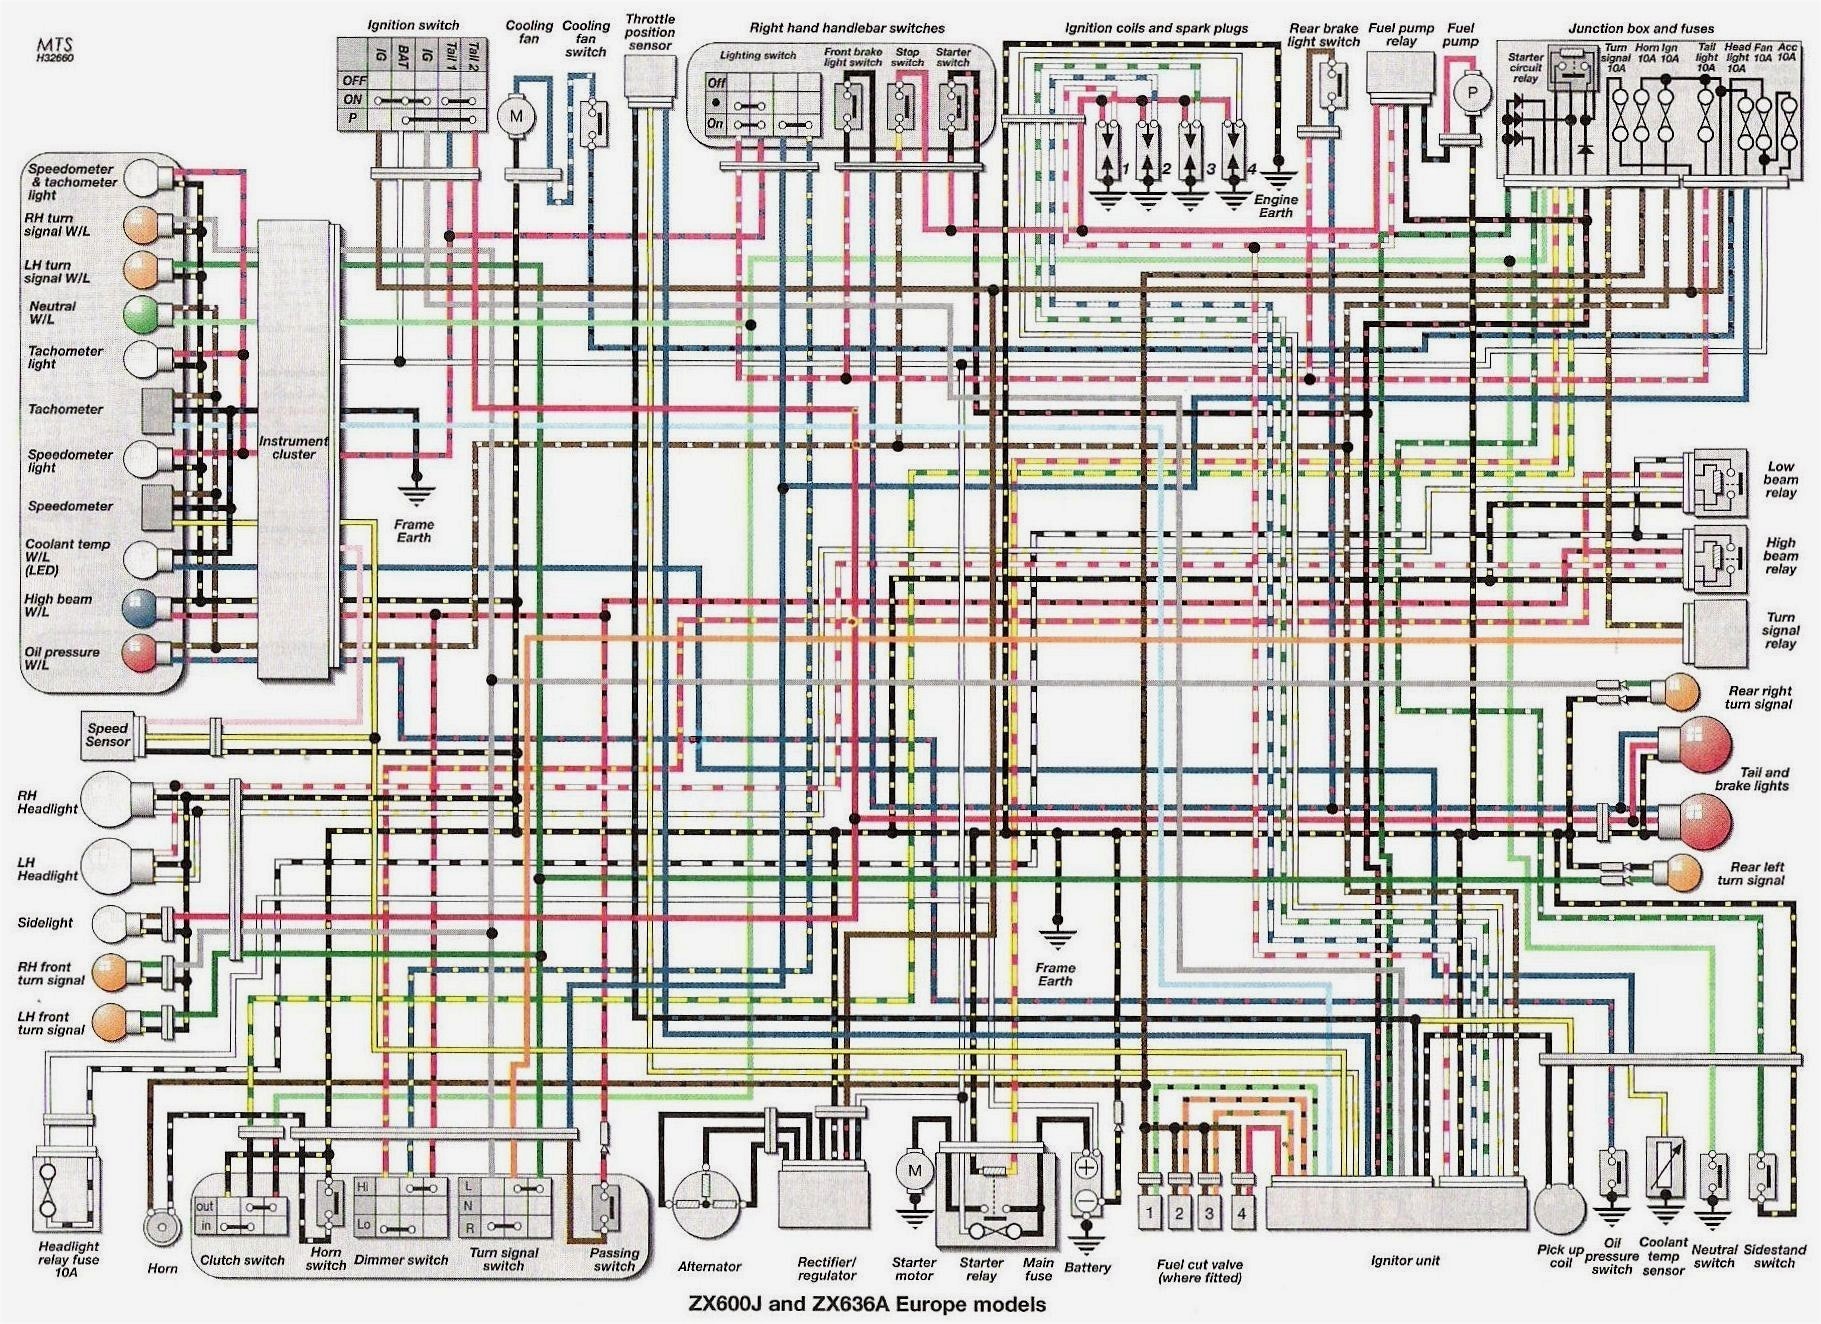 yamaha r1 wiring diagram wiring diagram load 2001 yamaha yzf r1 wiring diagram wiring diagram toolbox